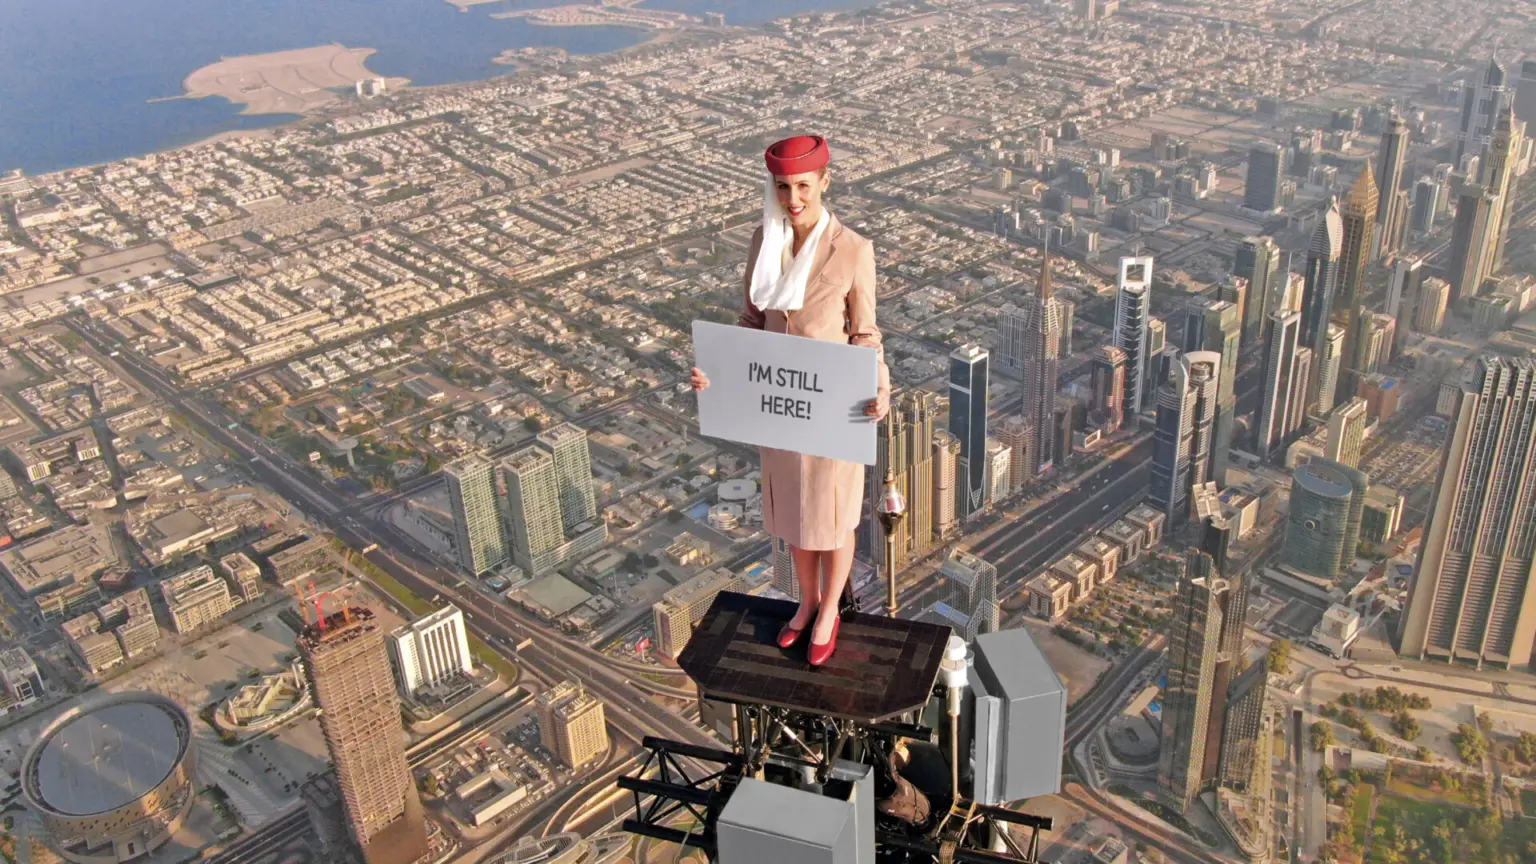 stunt emirates expo Burj Khalifa